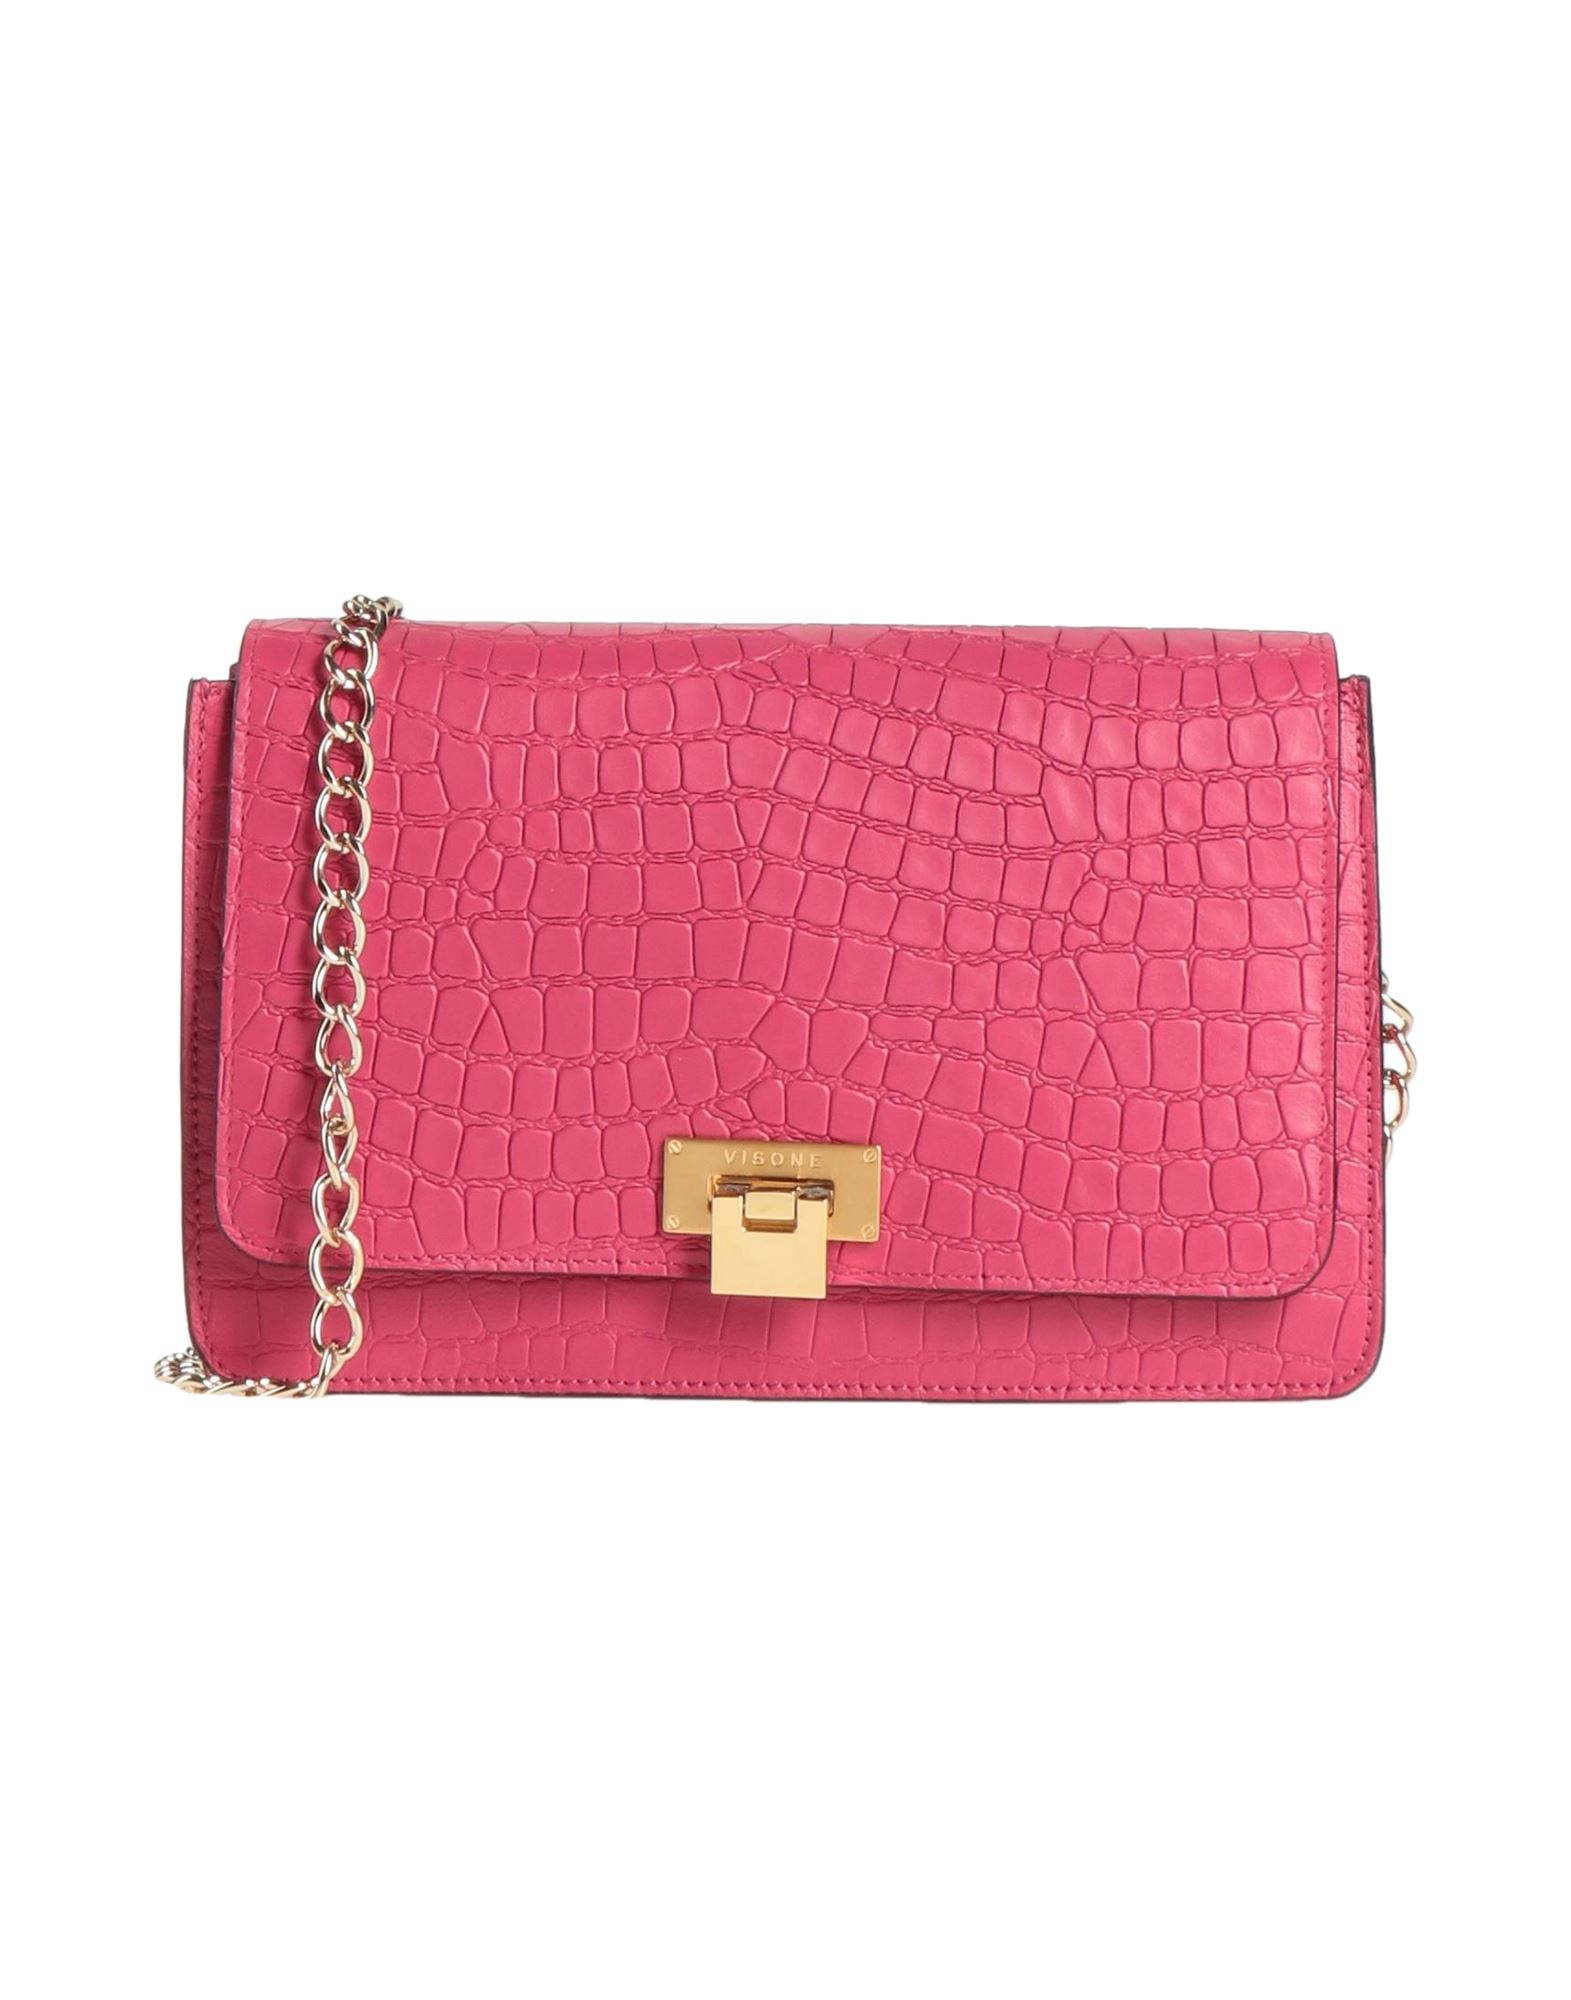 Visone Handbags In Pink